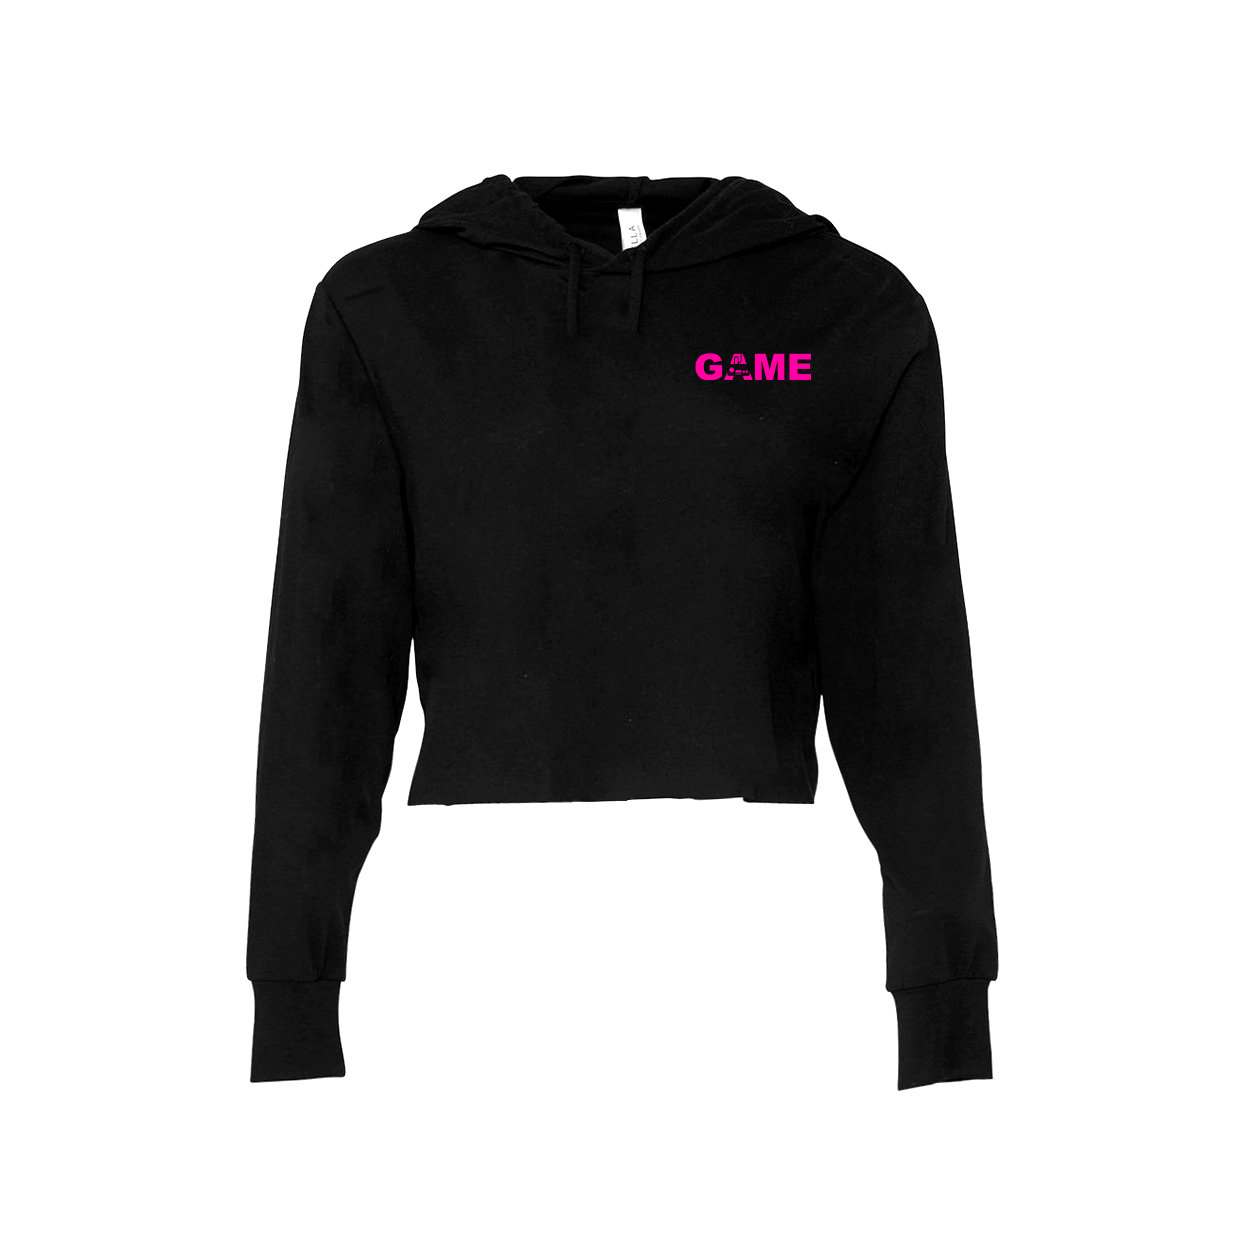 Game Controller Logo Night Out Womens Cropped Sweatshirt Black (Pink Logo)